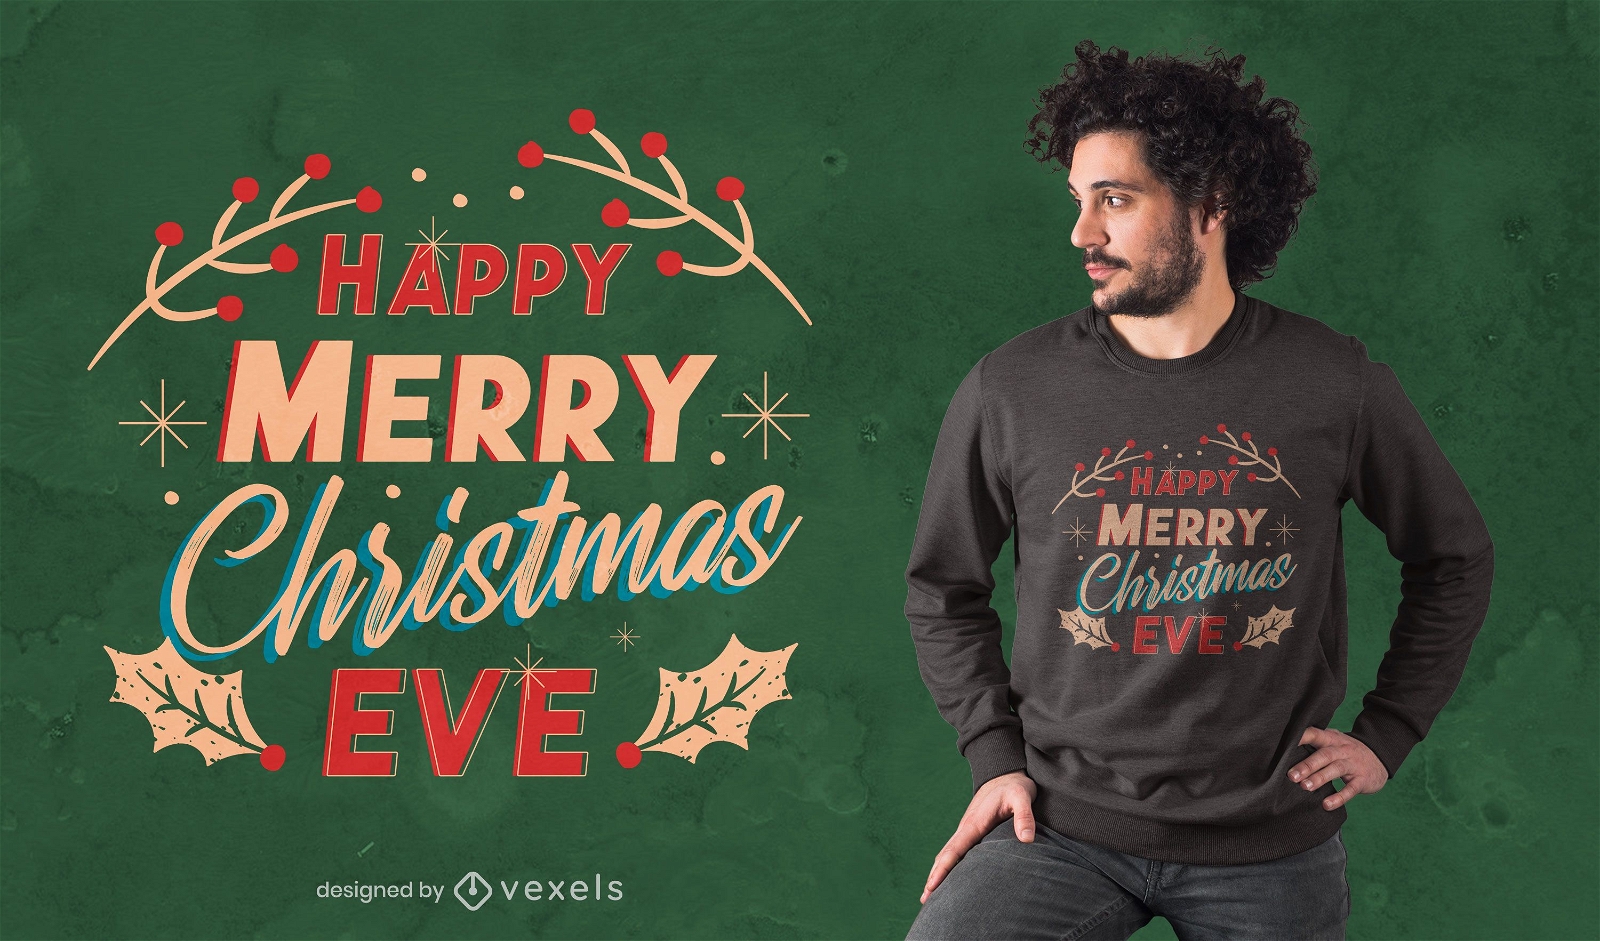 Merry christmas eve t-shirt design